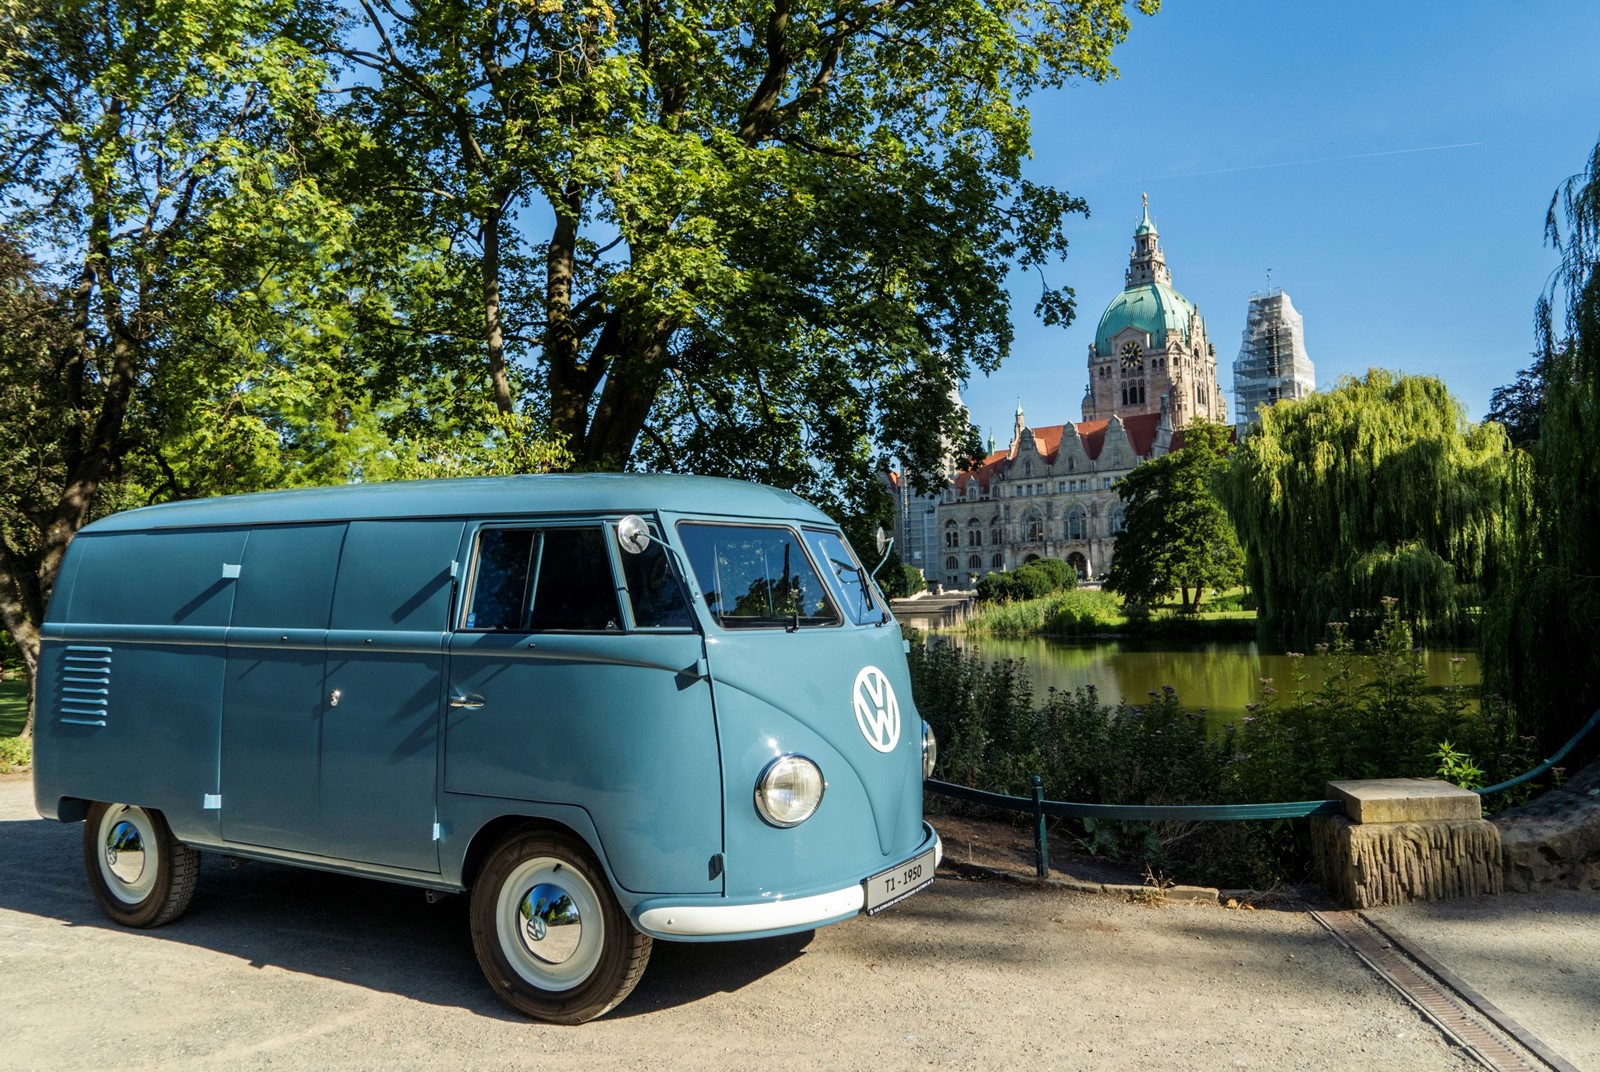 The oldest Volkswagen "van" turns 70